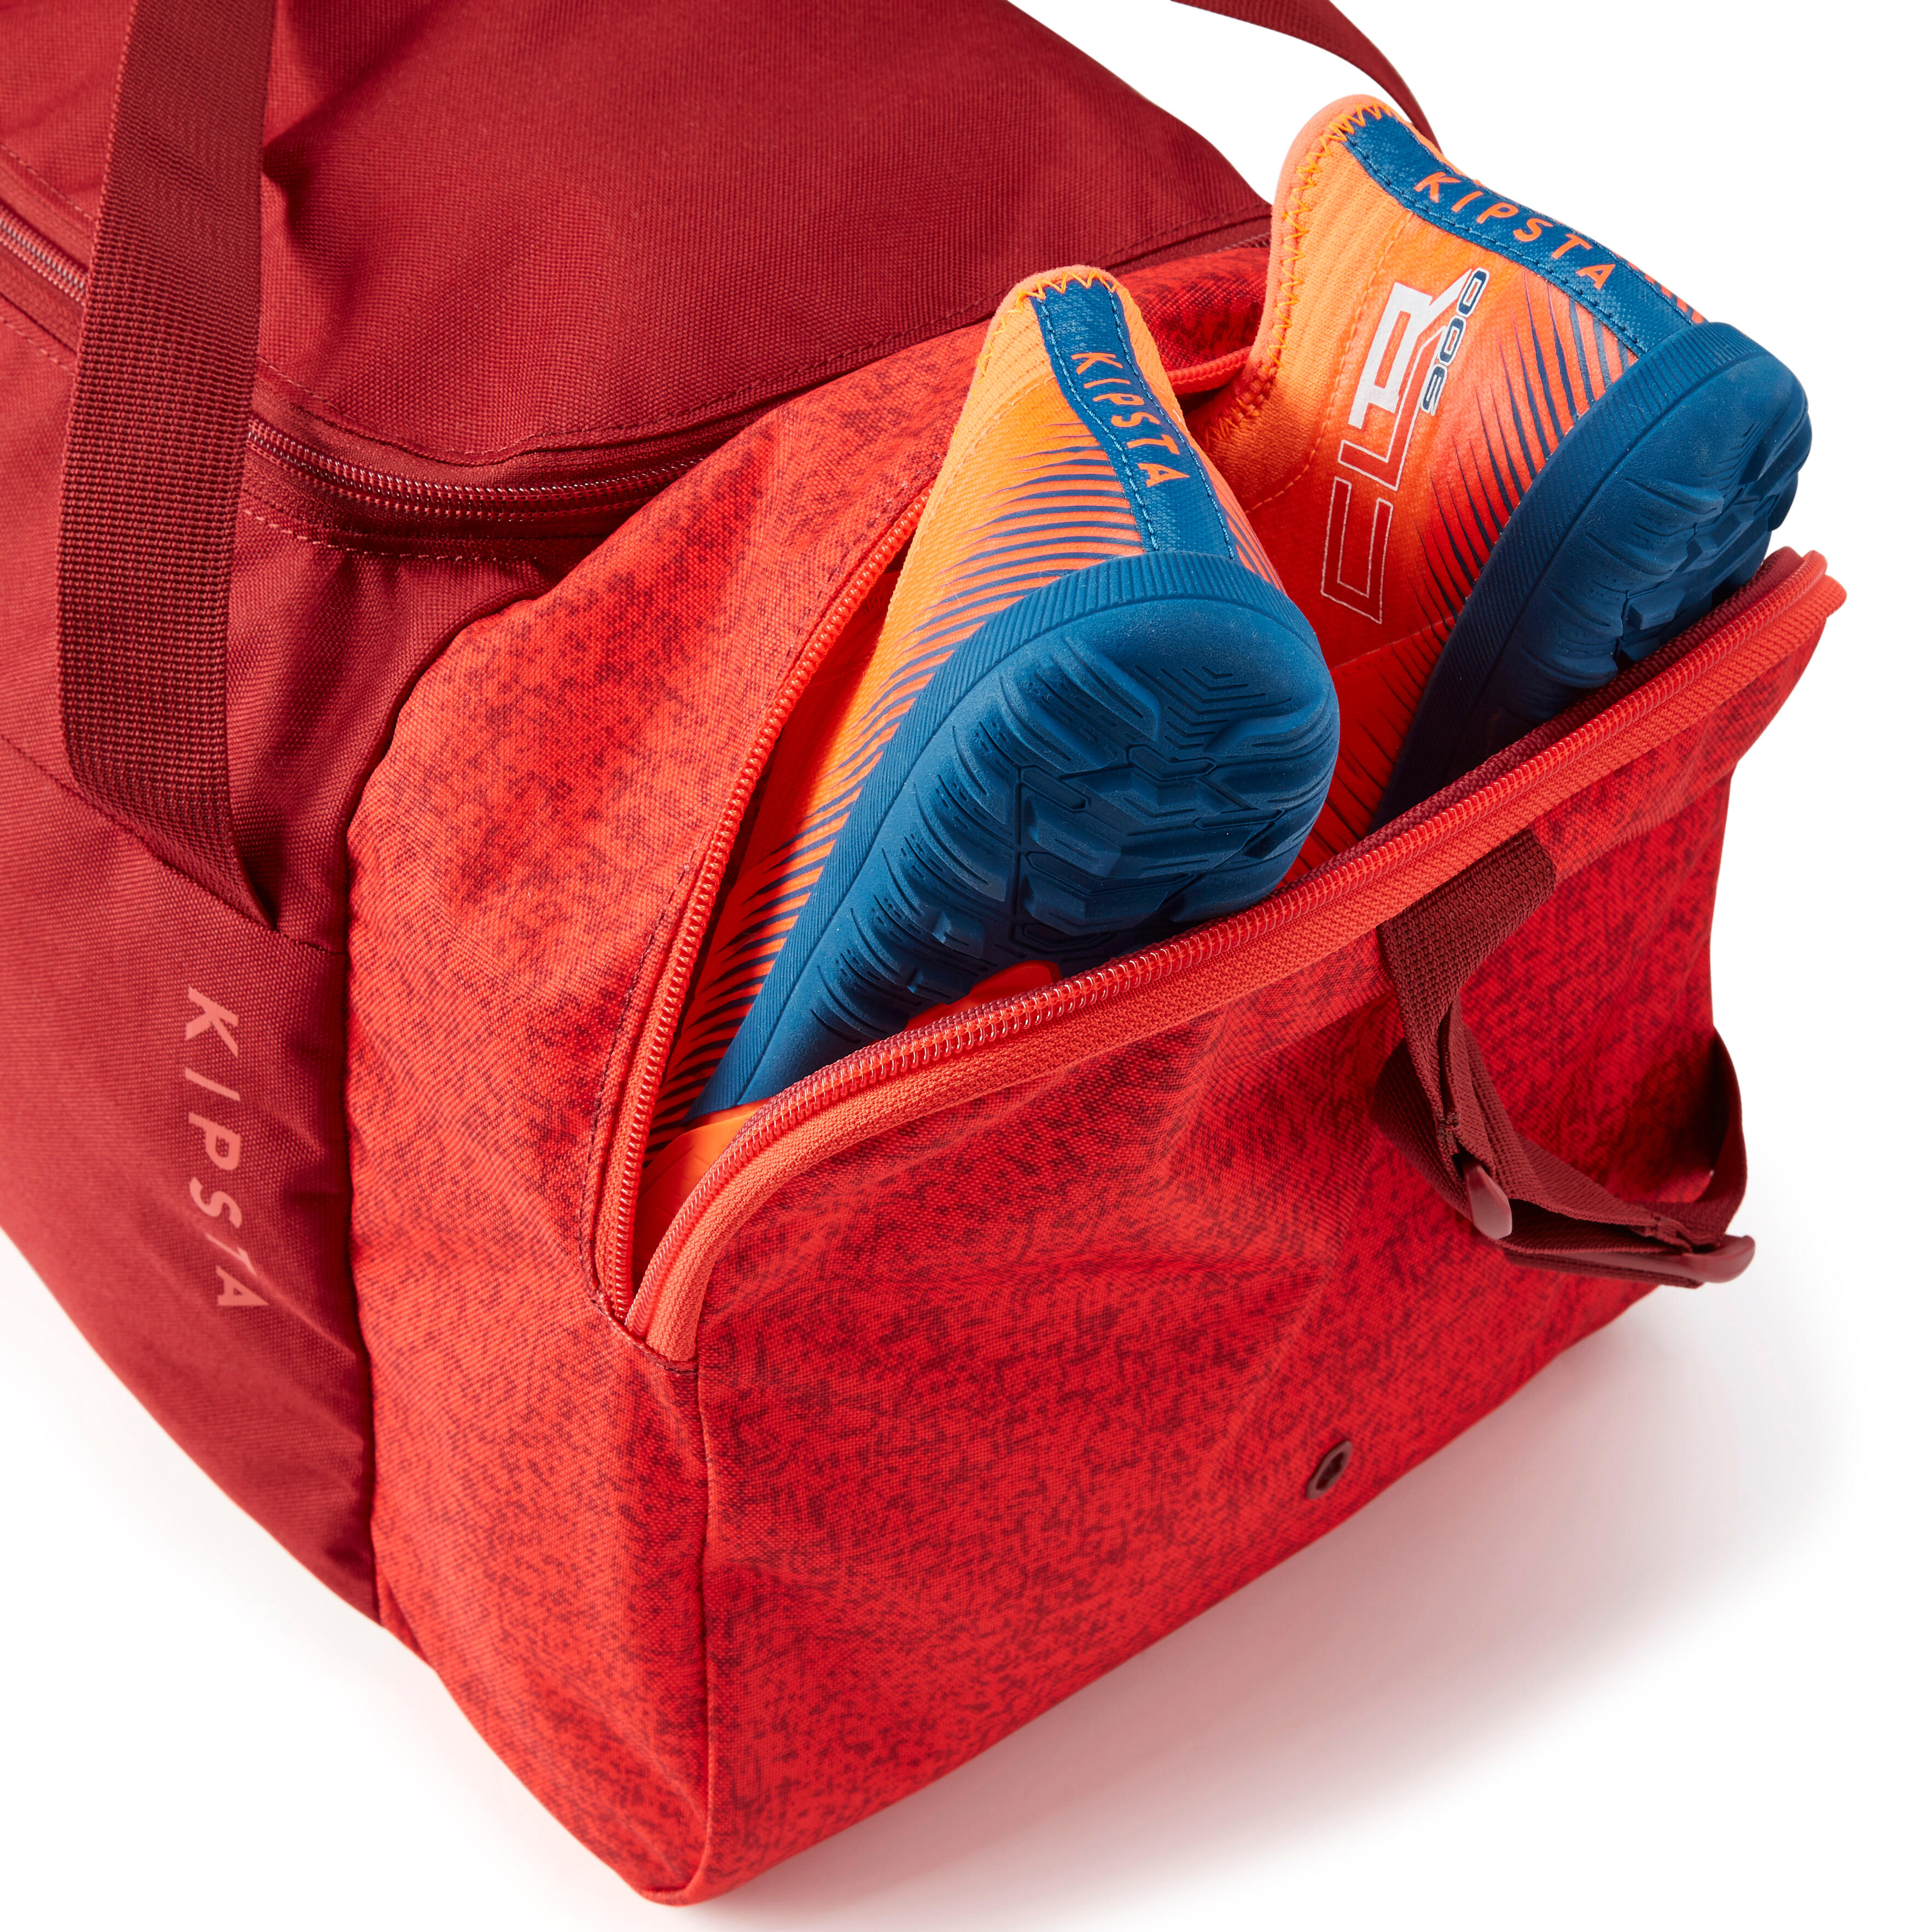 Soccer Bag - Essential 35 L Red - KIPSTA